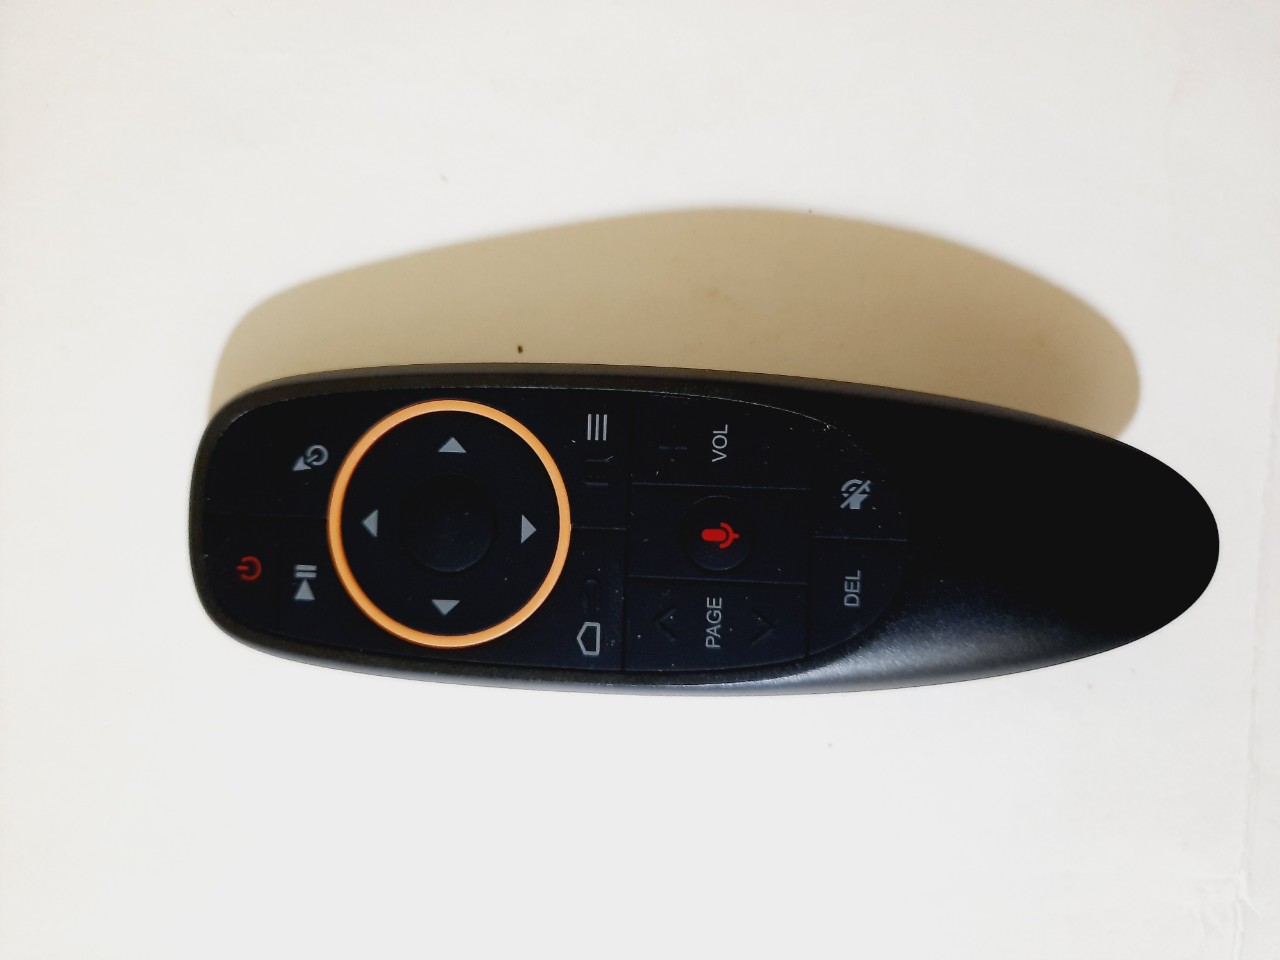 Chuột bay G10S điều khiển giọng nói cho SmartTV, TV Box, PC- Hàng chính hãng Full Box 100% Tặng kèm Pin